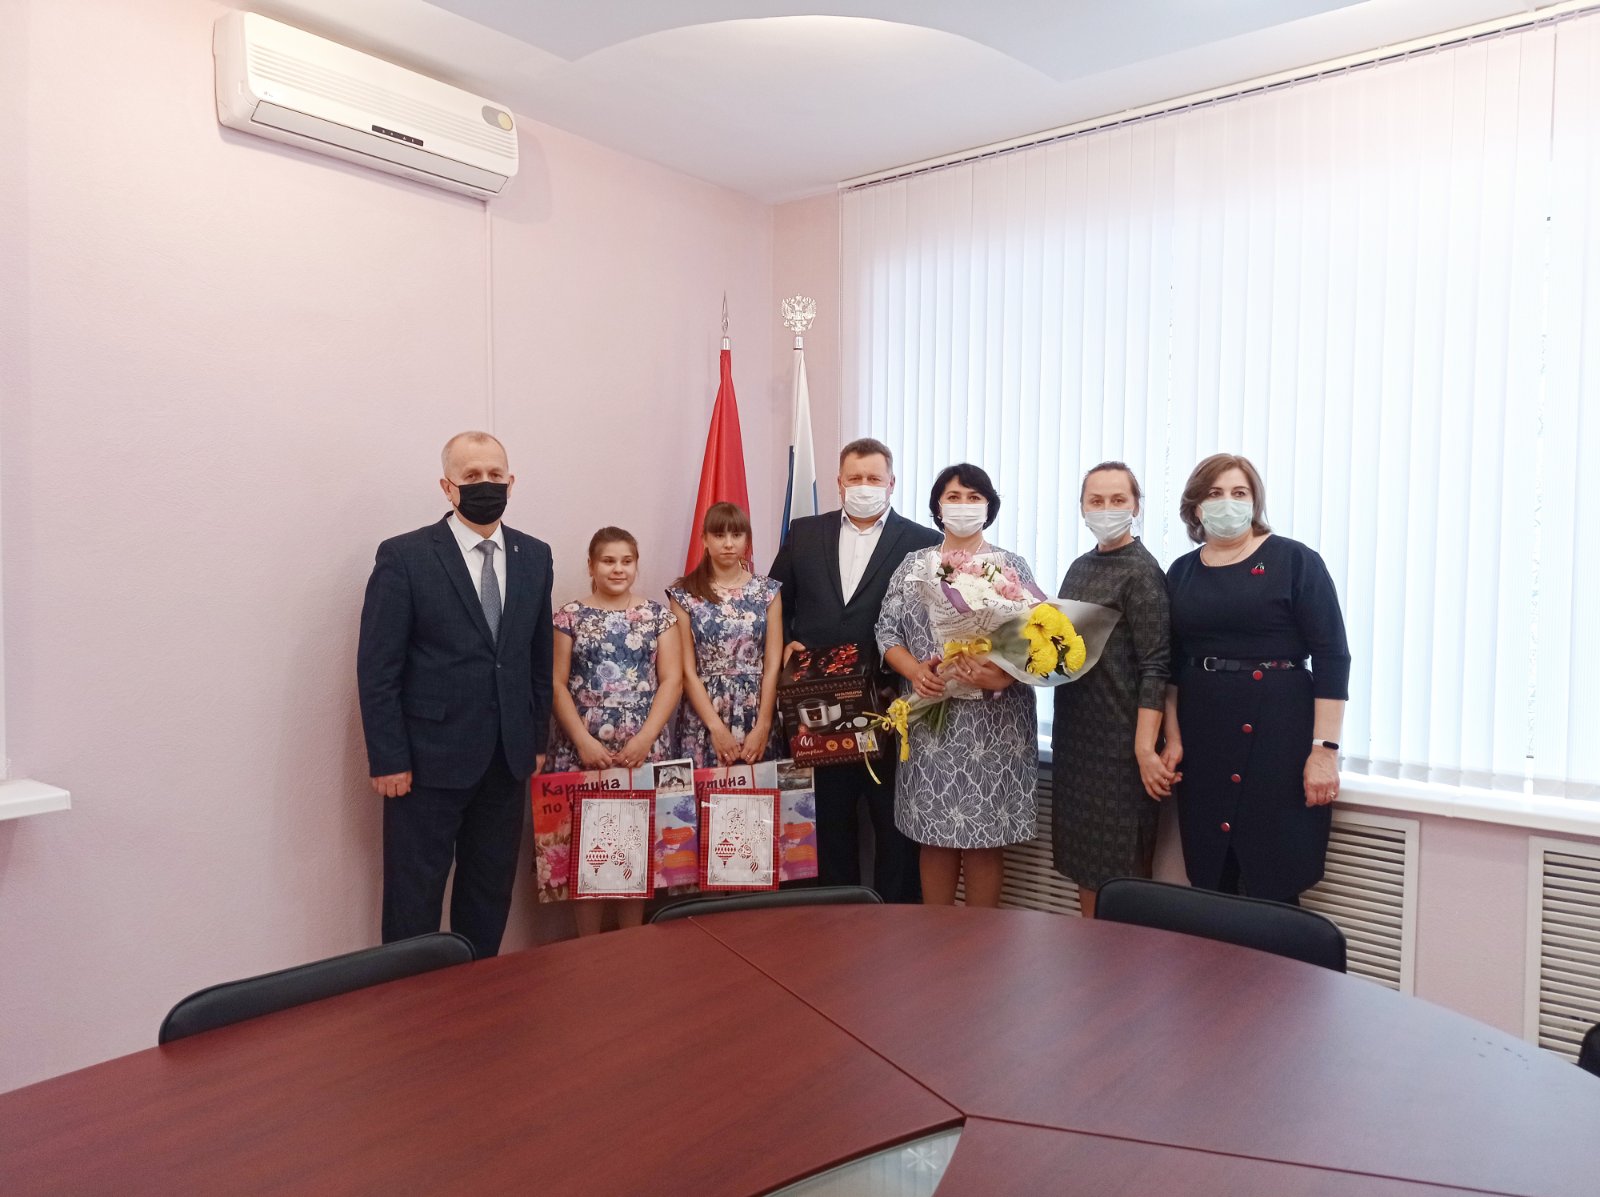 В Брянске чествовали победившую во Всероссийском конкурсе многодетную семью Бусаревых